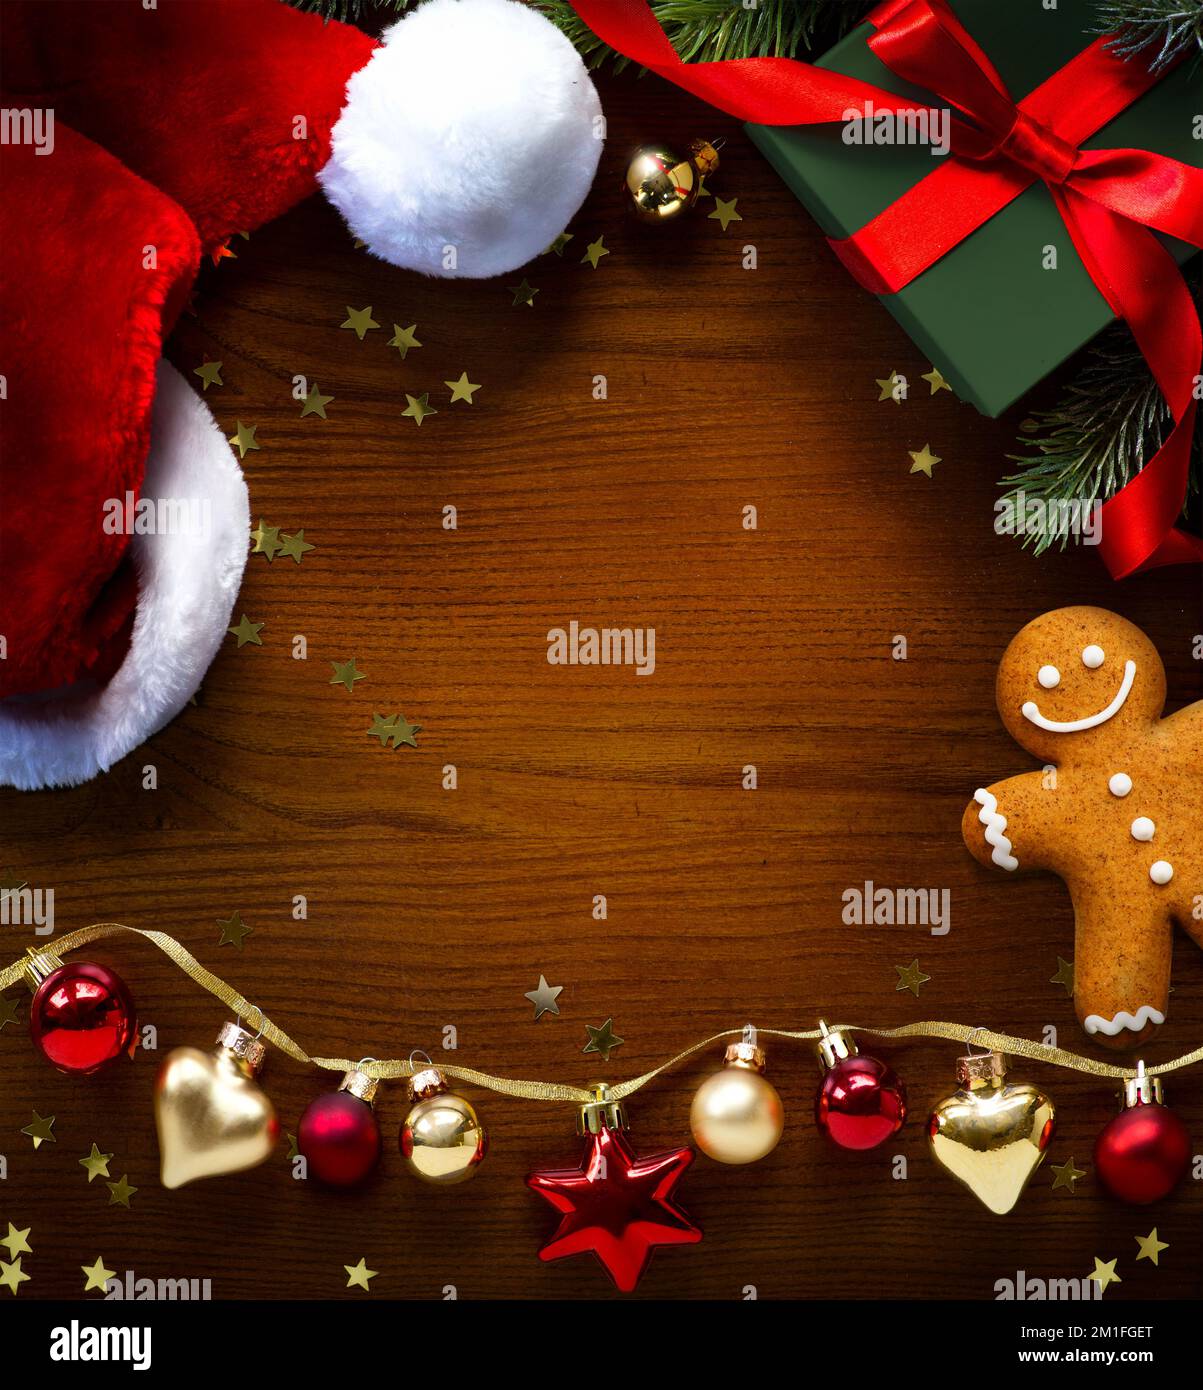 Carte de voeux, cadre, bannière pour les fêtes de Noël et les fêtes de fin d'année. Nouvelle année. Noël. Boîte cadeau de Noël, pain d'épice et ornements sur fond de bois. W Banque D'Images